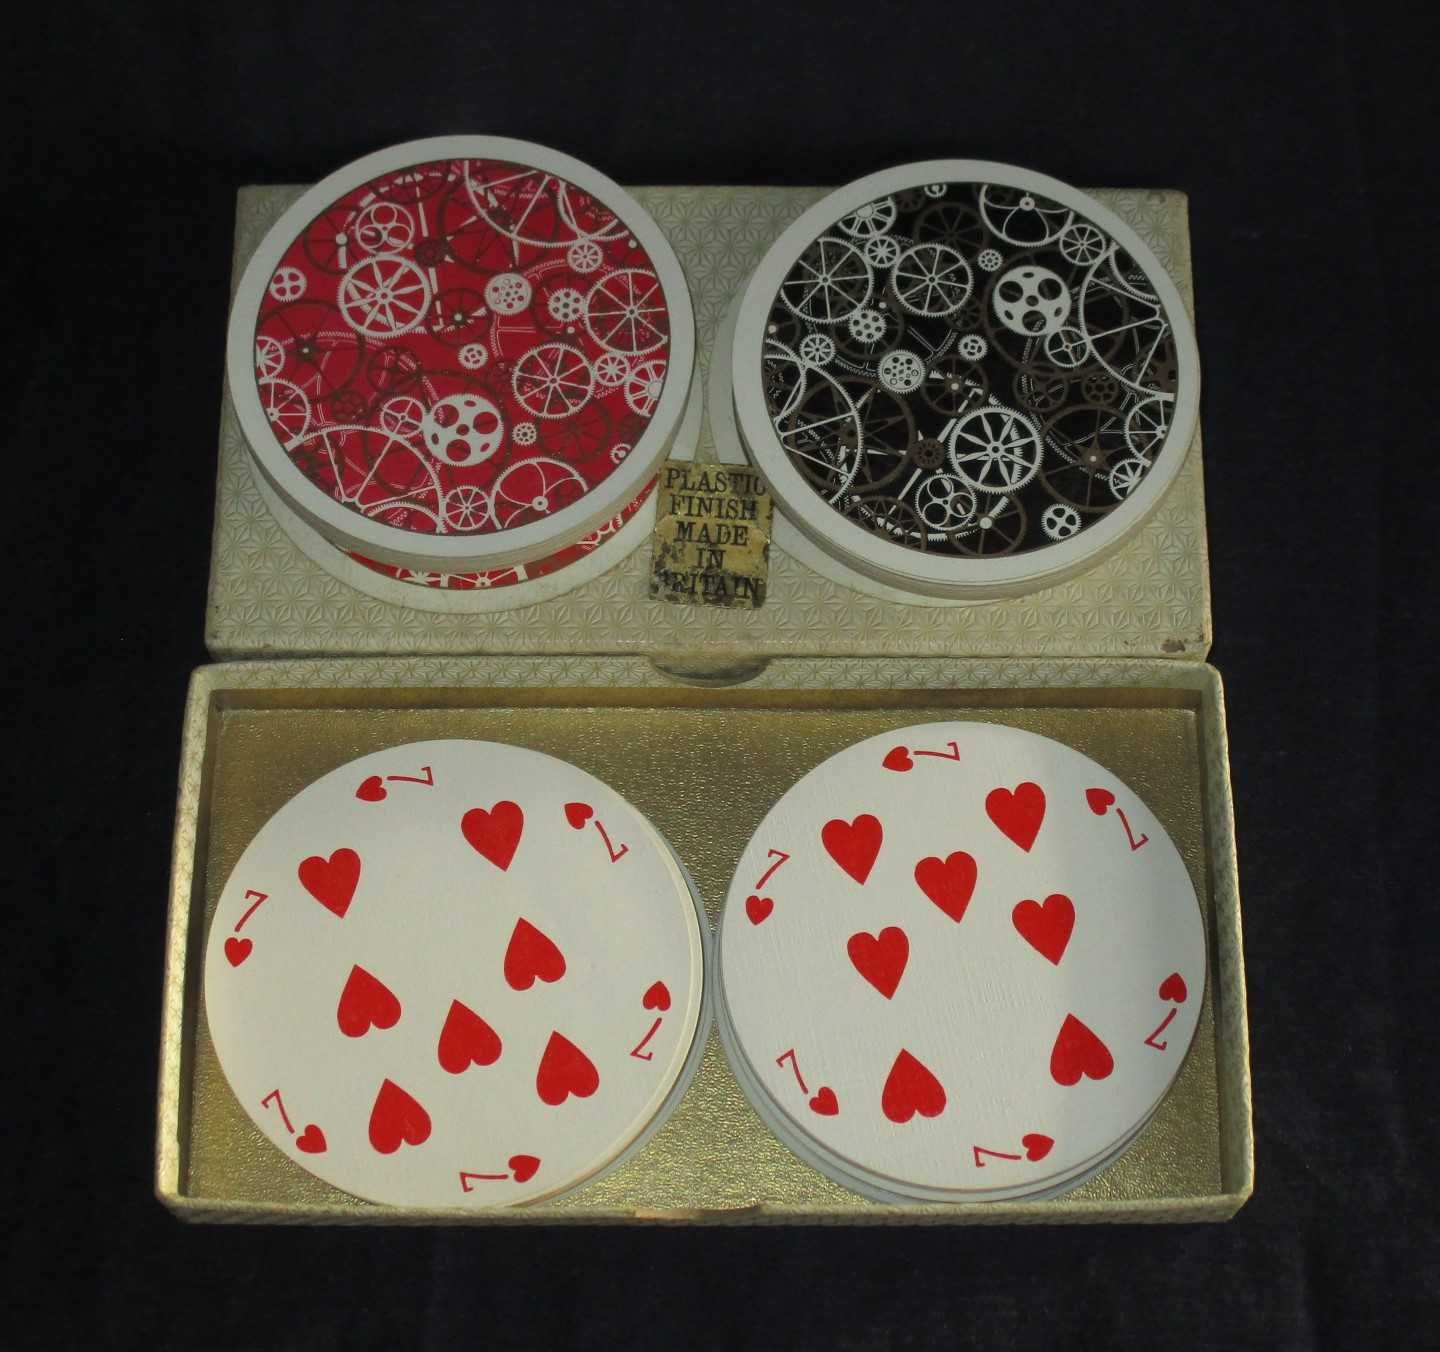 Baralho de Cartas Waddington circular playing cards Rondo anos 60